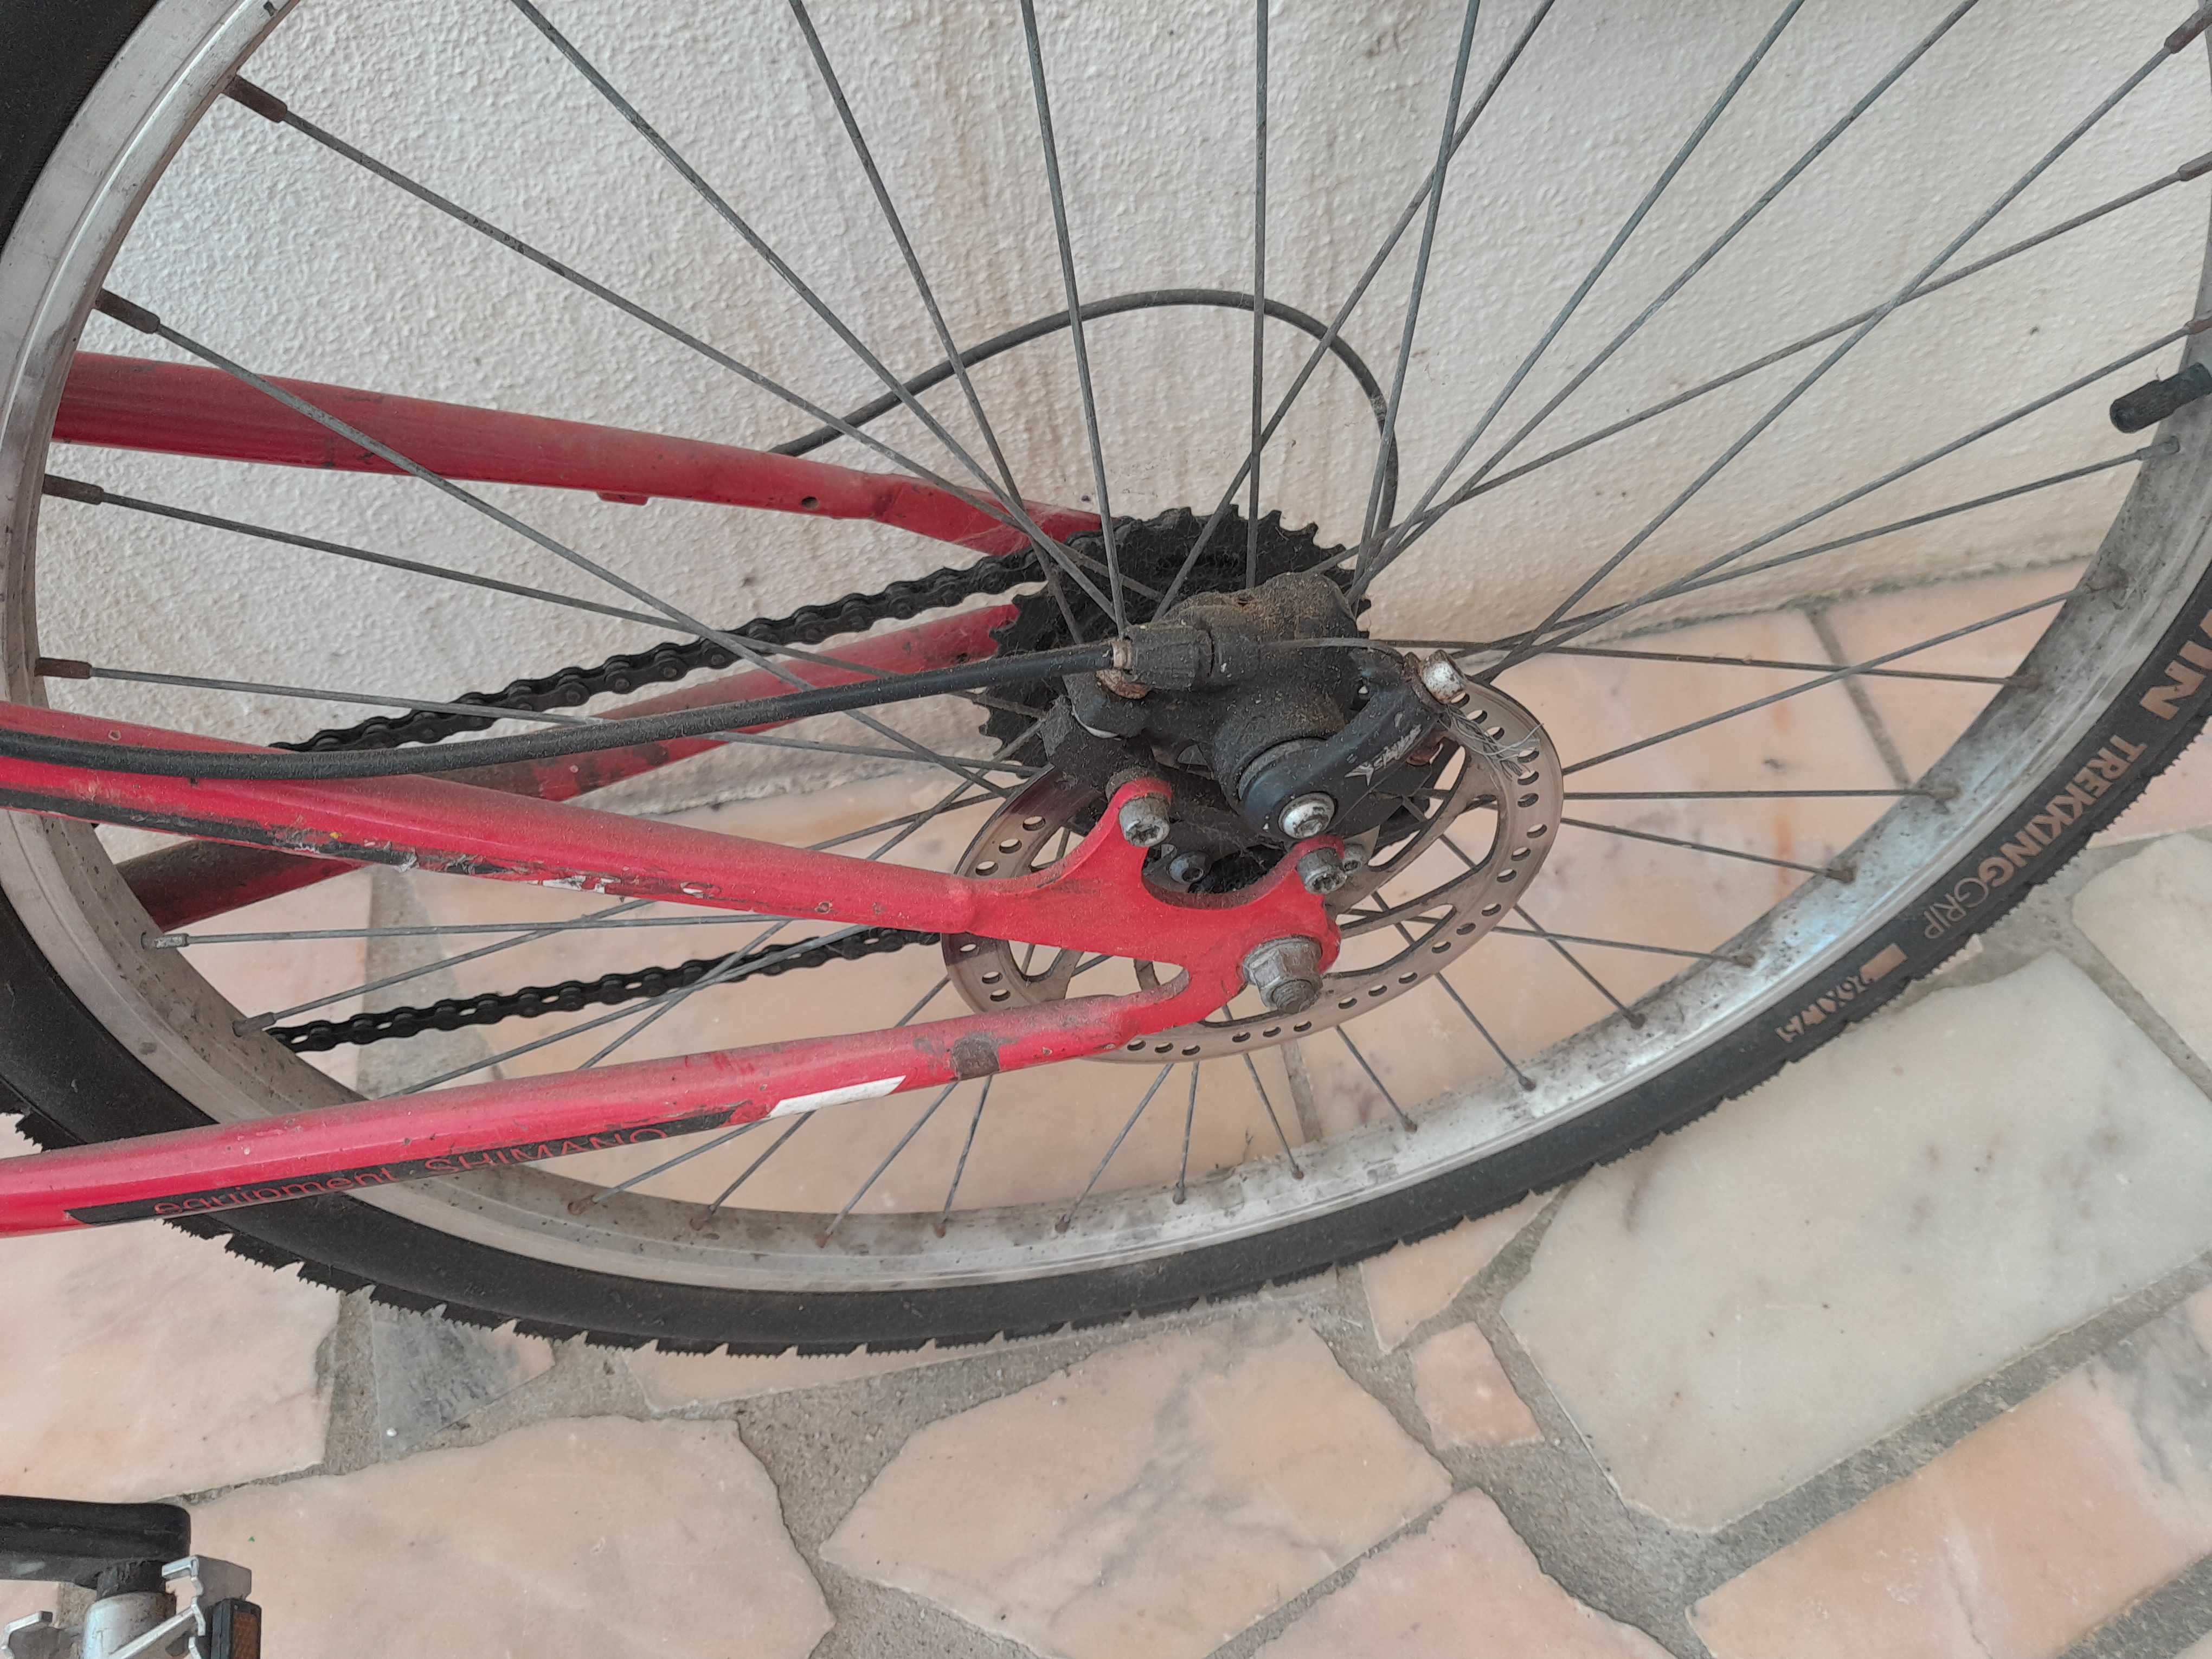 Bicicleta btt com amortecedores